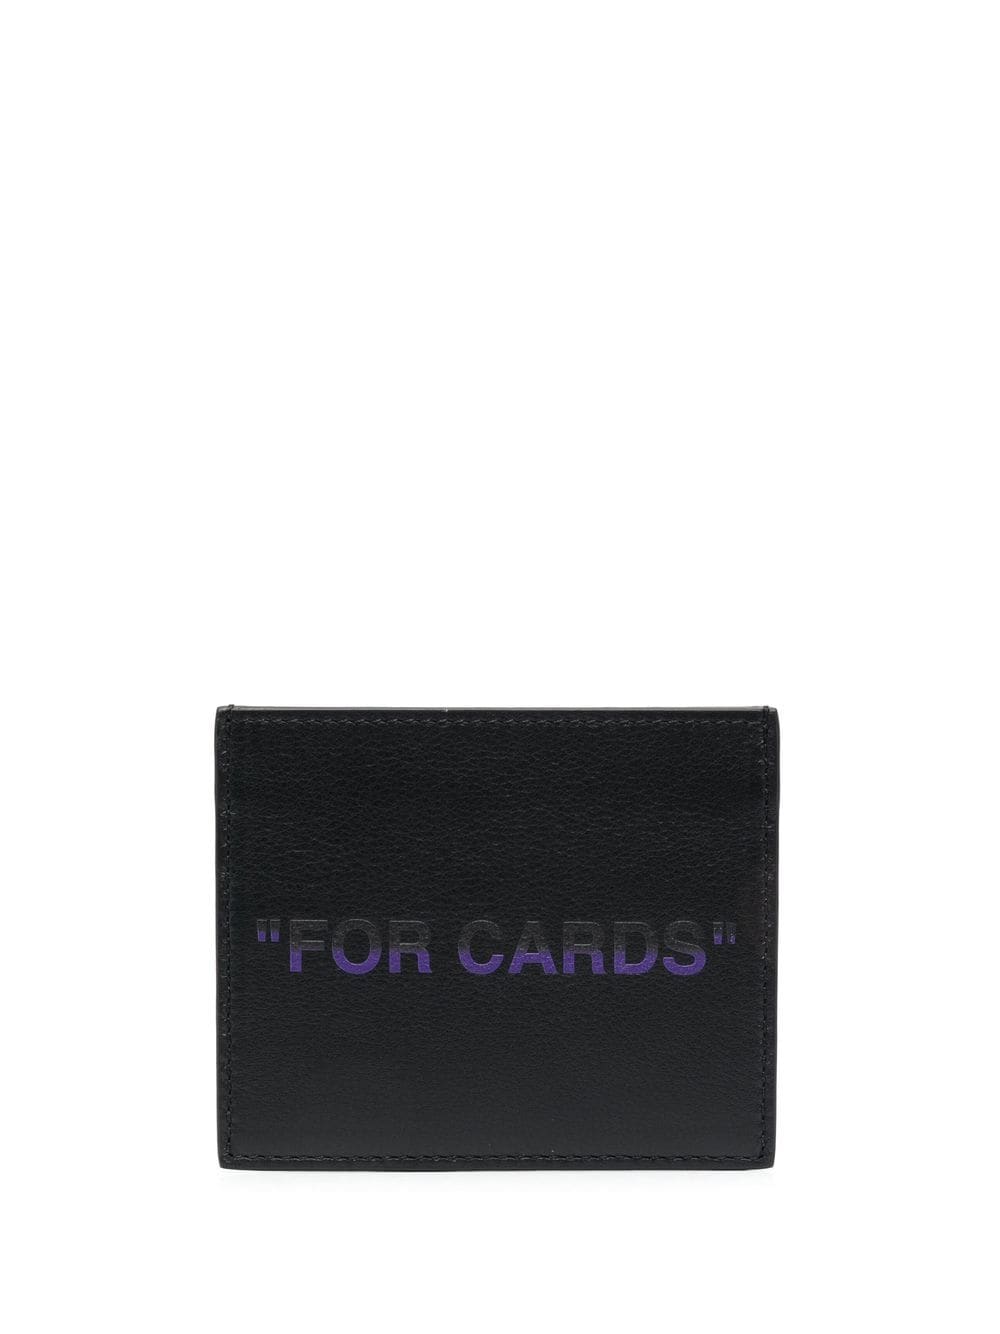 OFF-WHITE Quote Card Case Black/Purple - MAISONDEFASHION.COM